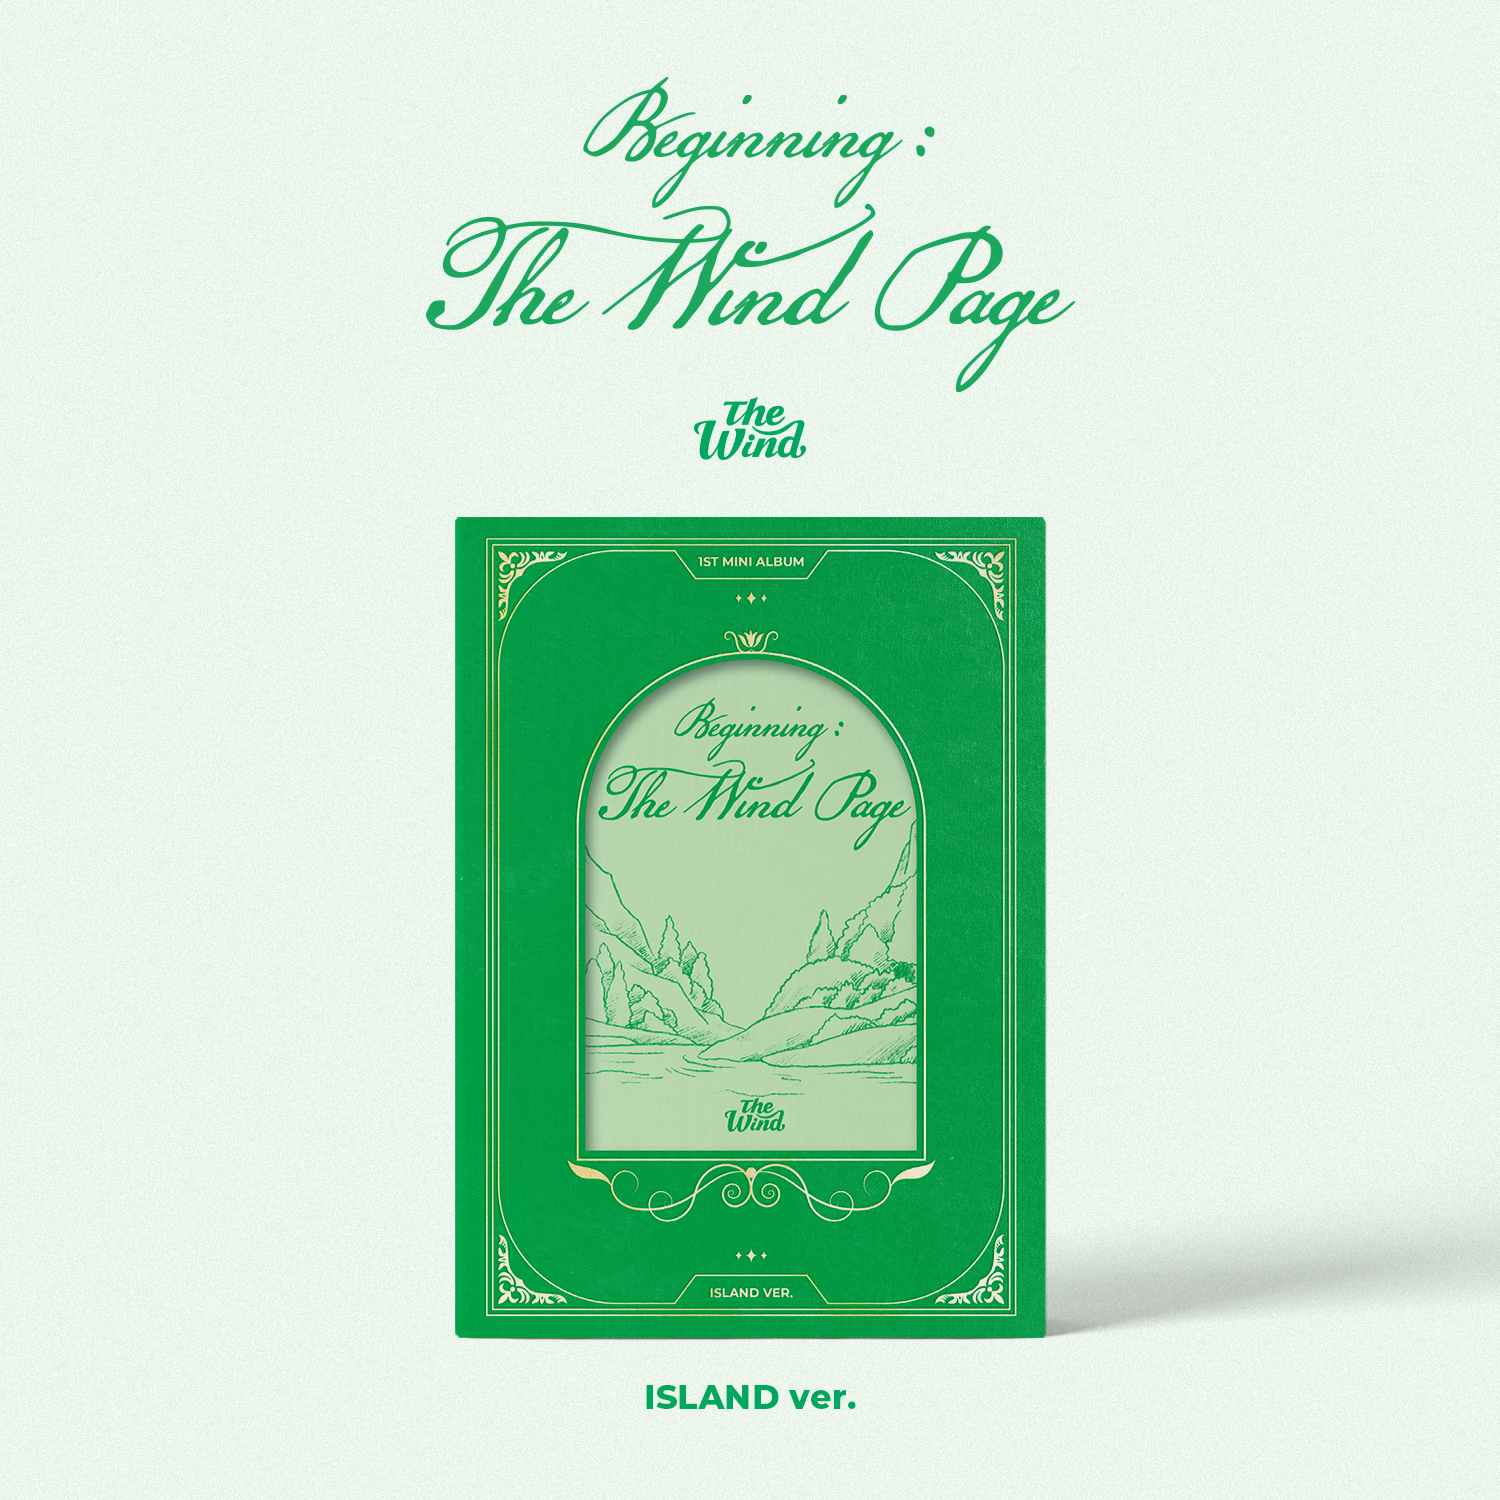 [全款 裸专] [Off-Line Sign Event] The Wind - 1st Mini Album [Beginning : The Wind Page]_TheWind_SundialDreams